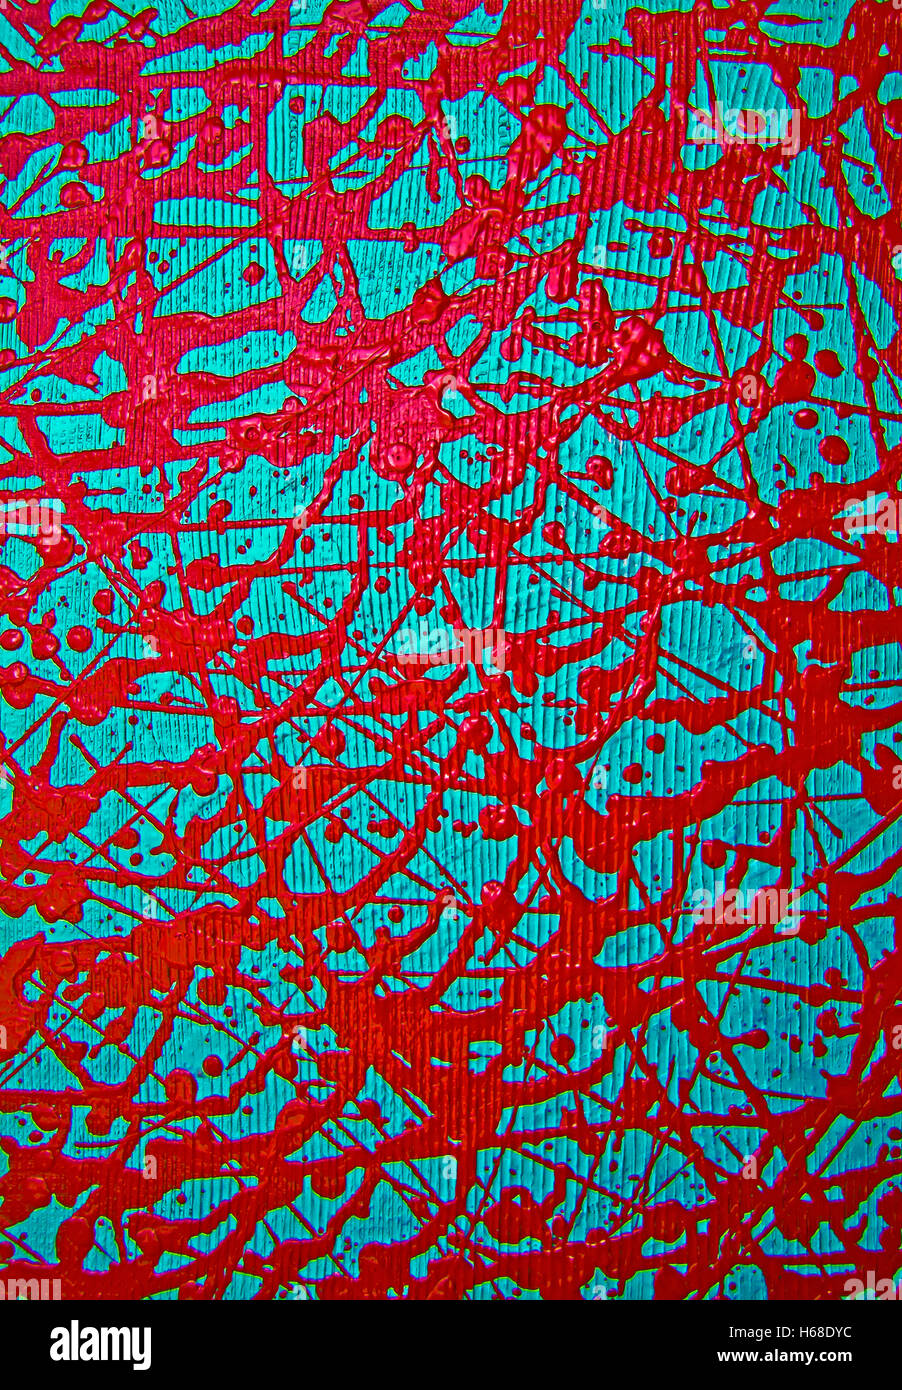 Rote Farbe Tropft. Detail der Malerei in Acryl auf Leinwand mit dem texturellen Hintergrund. Stockfoto